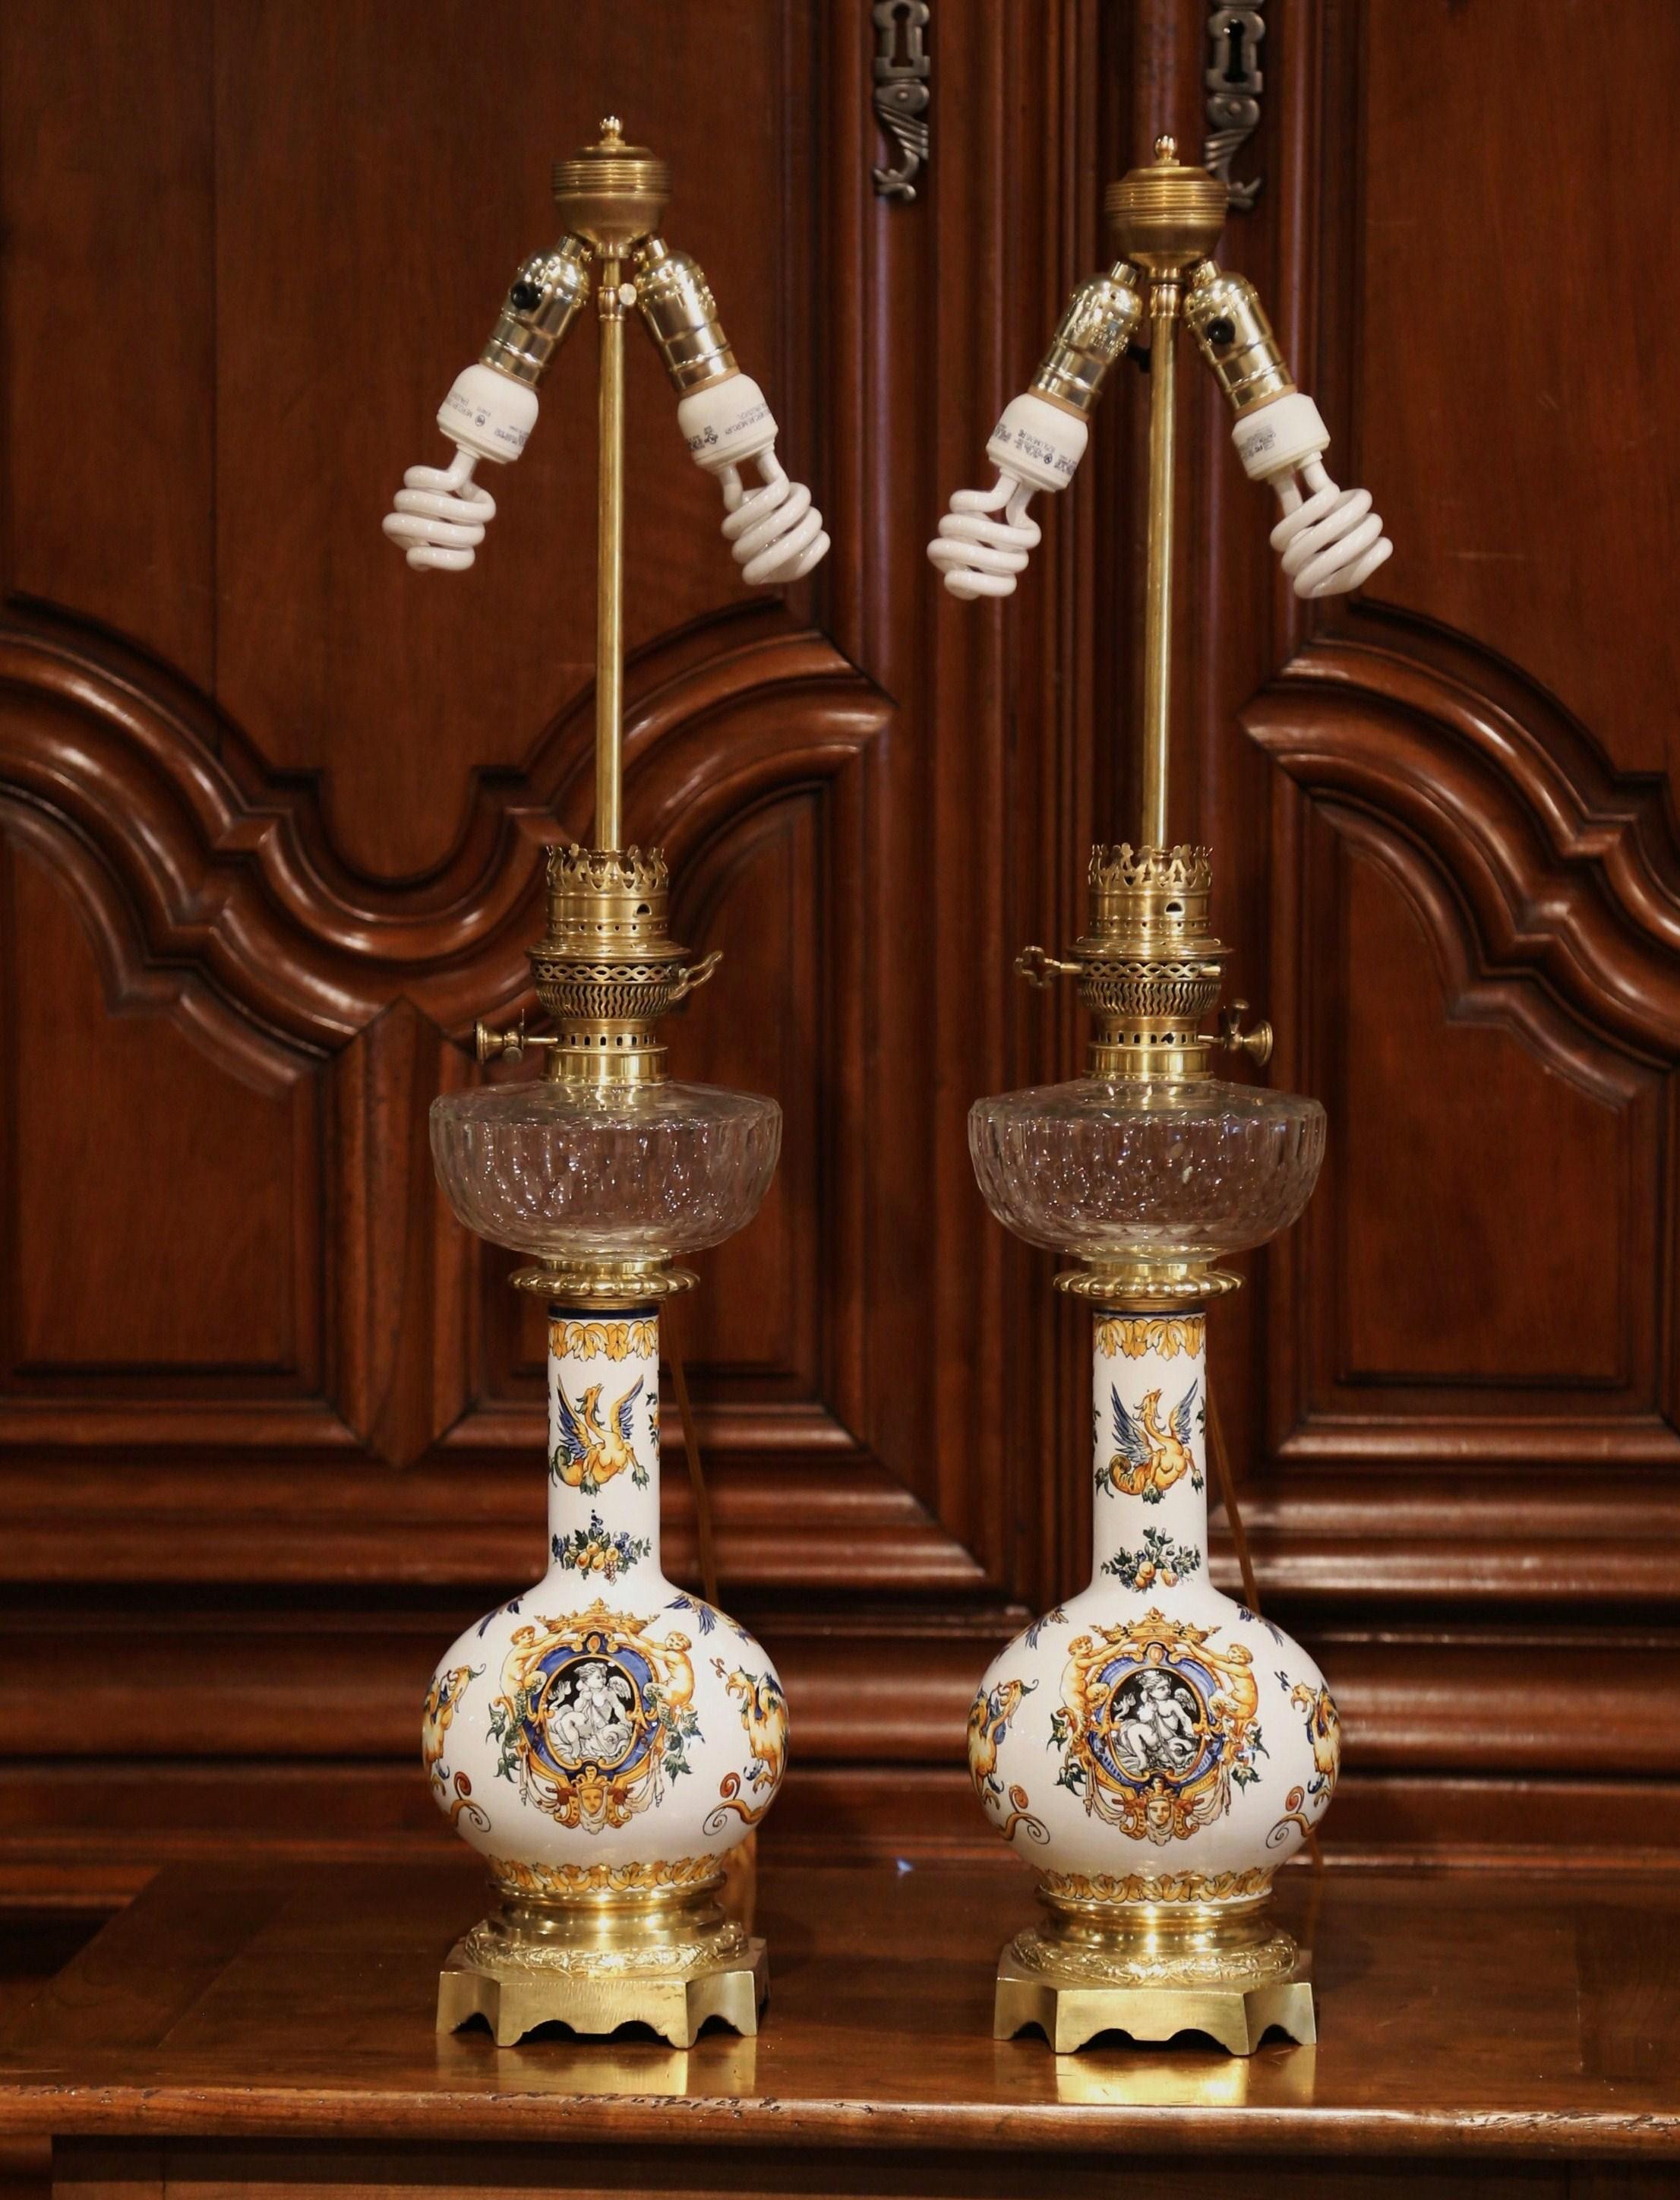 Elégante paire de lampes à huile anciennes transformées en lampes de table, fabriquées à Gien, France, vers 1880. Les hautes 